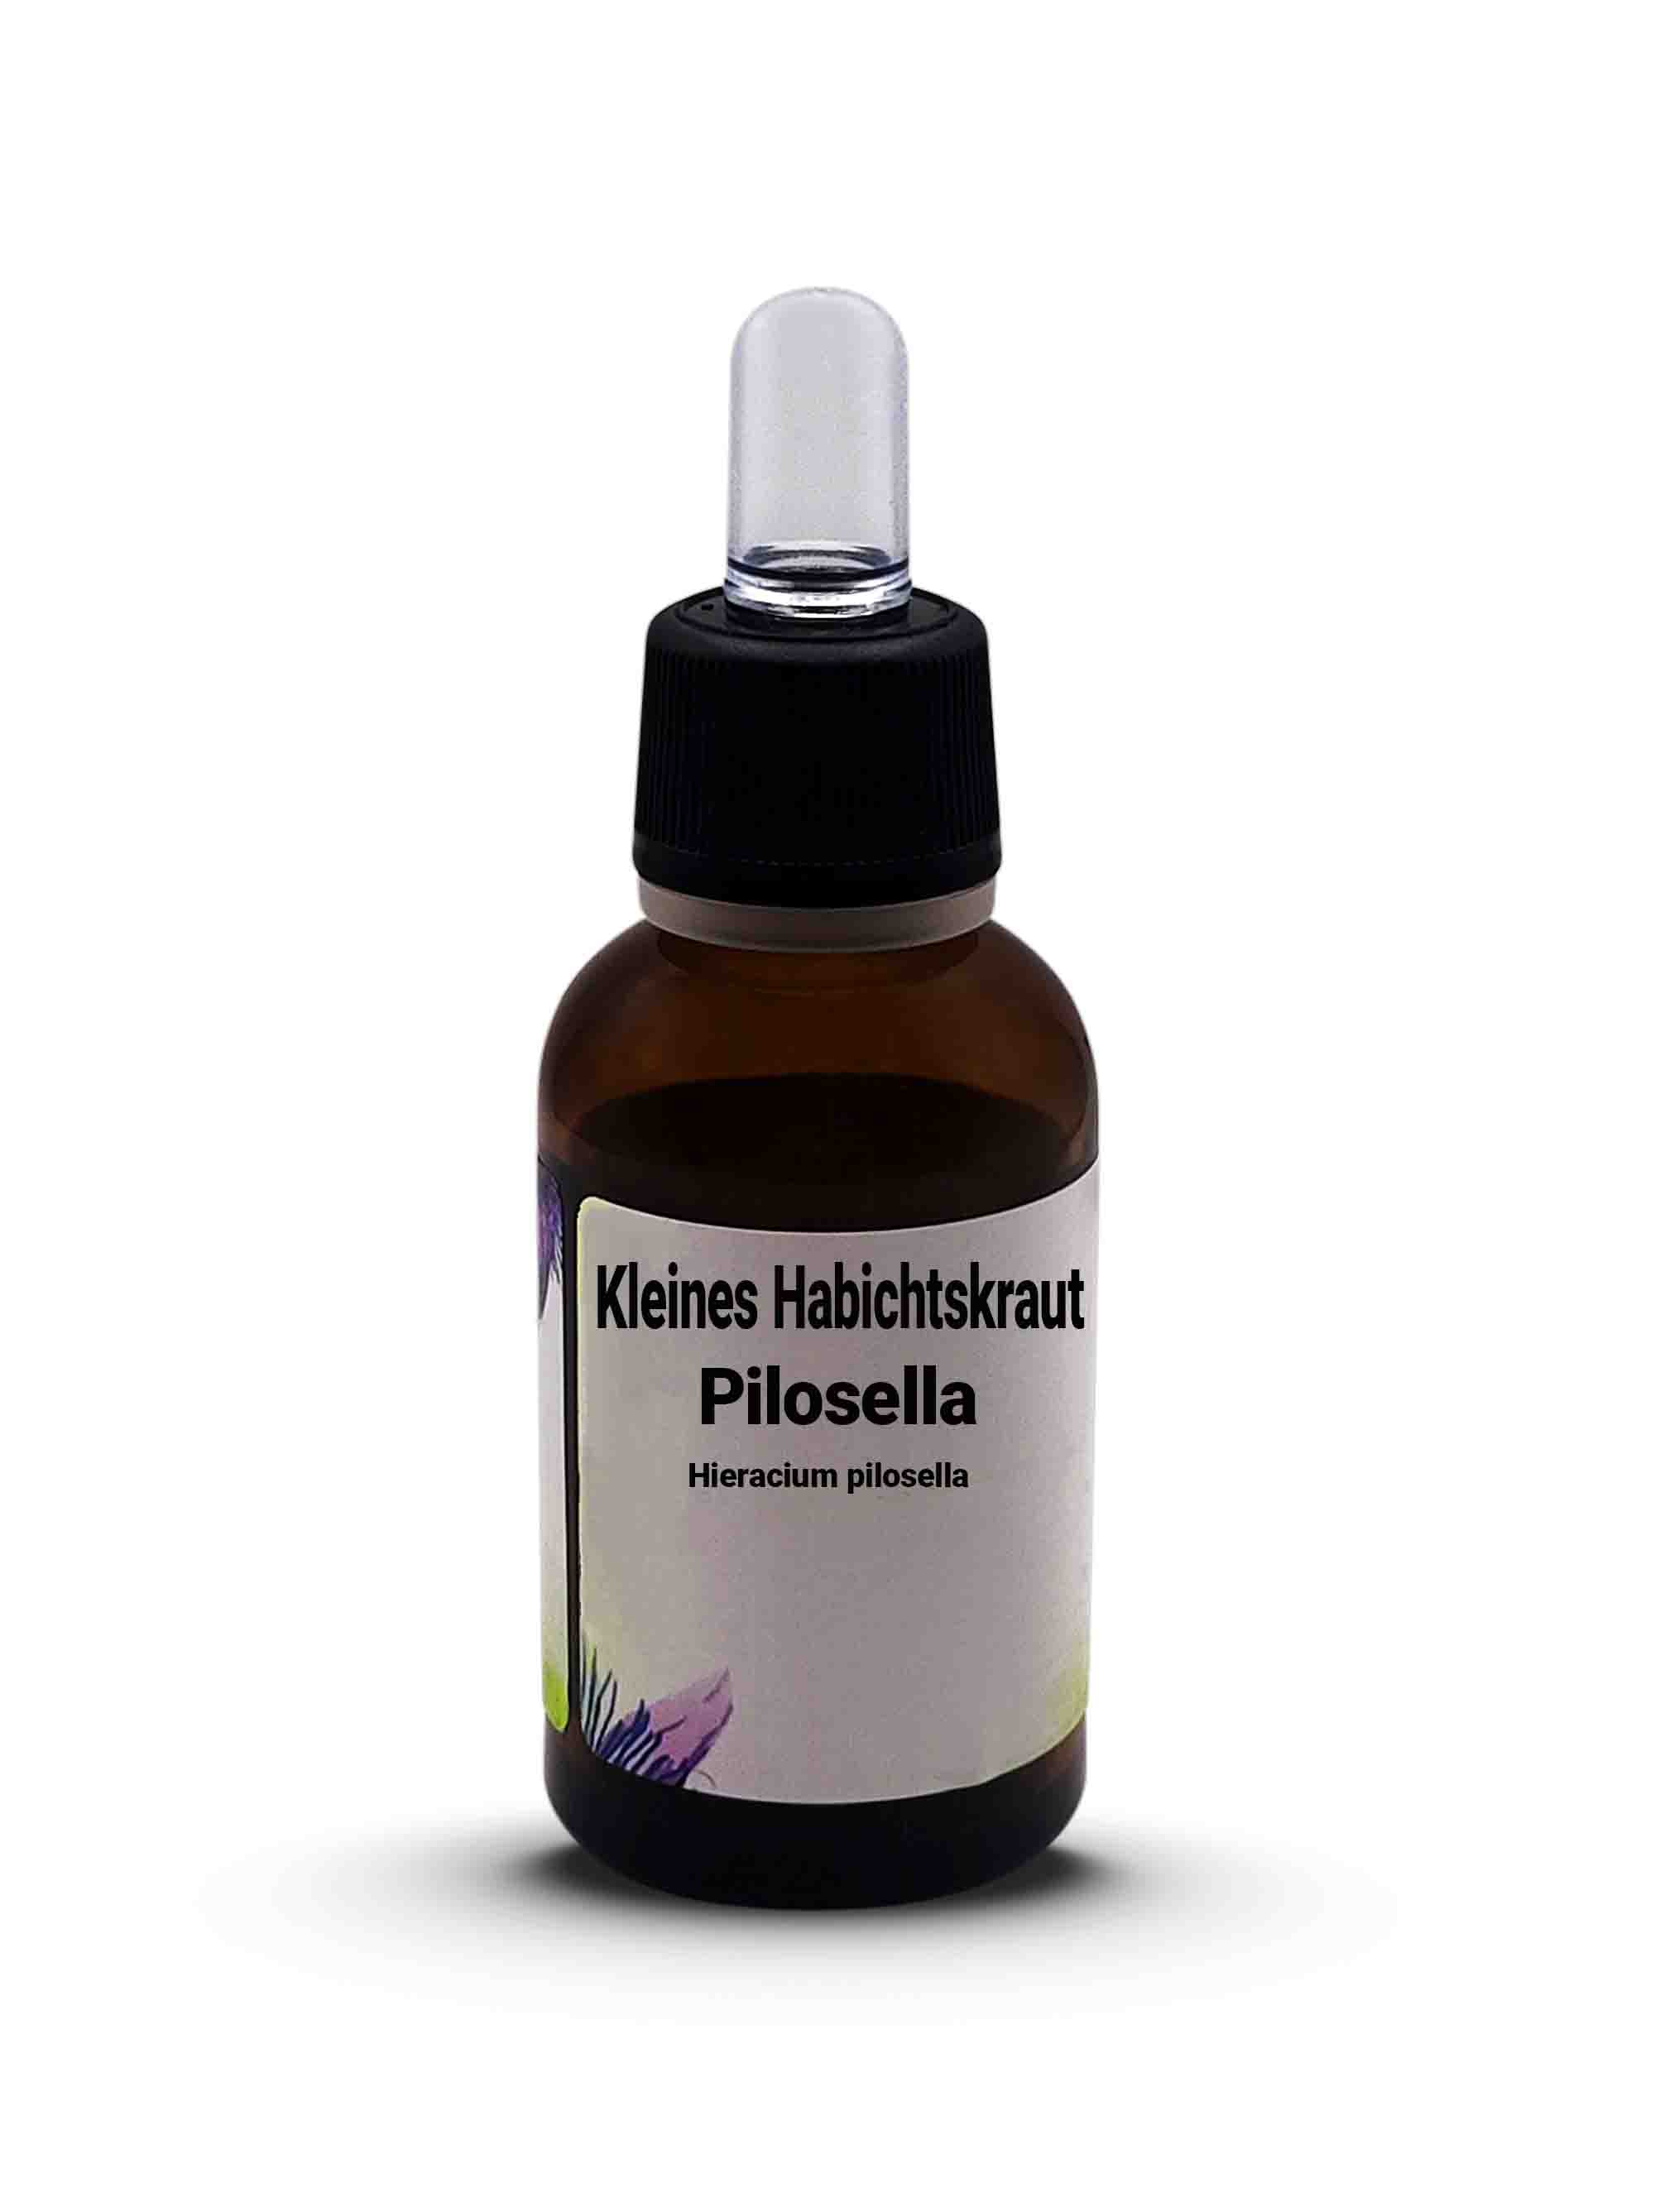 Kleines Habichtskraut Pilosella  Hieracium pilosella 30 ml